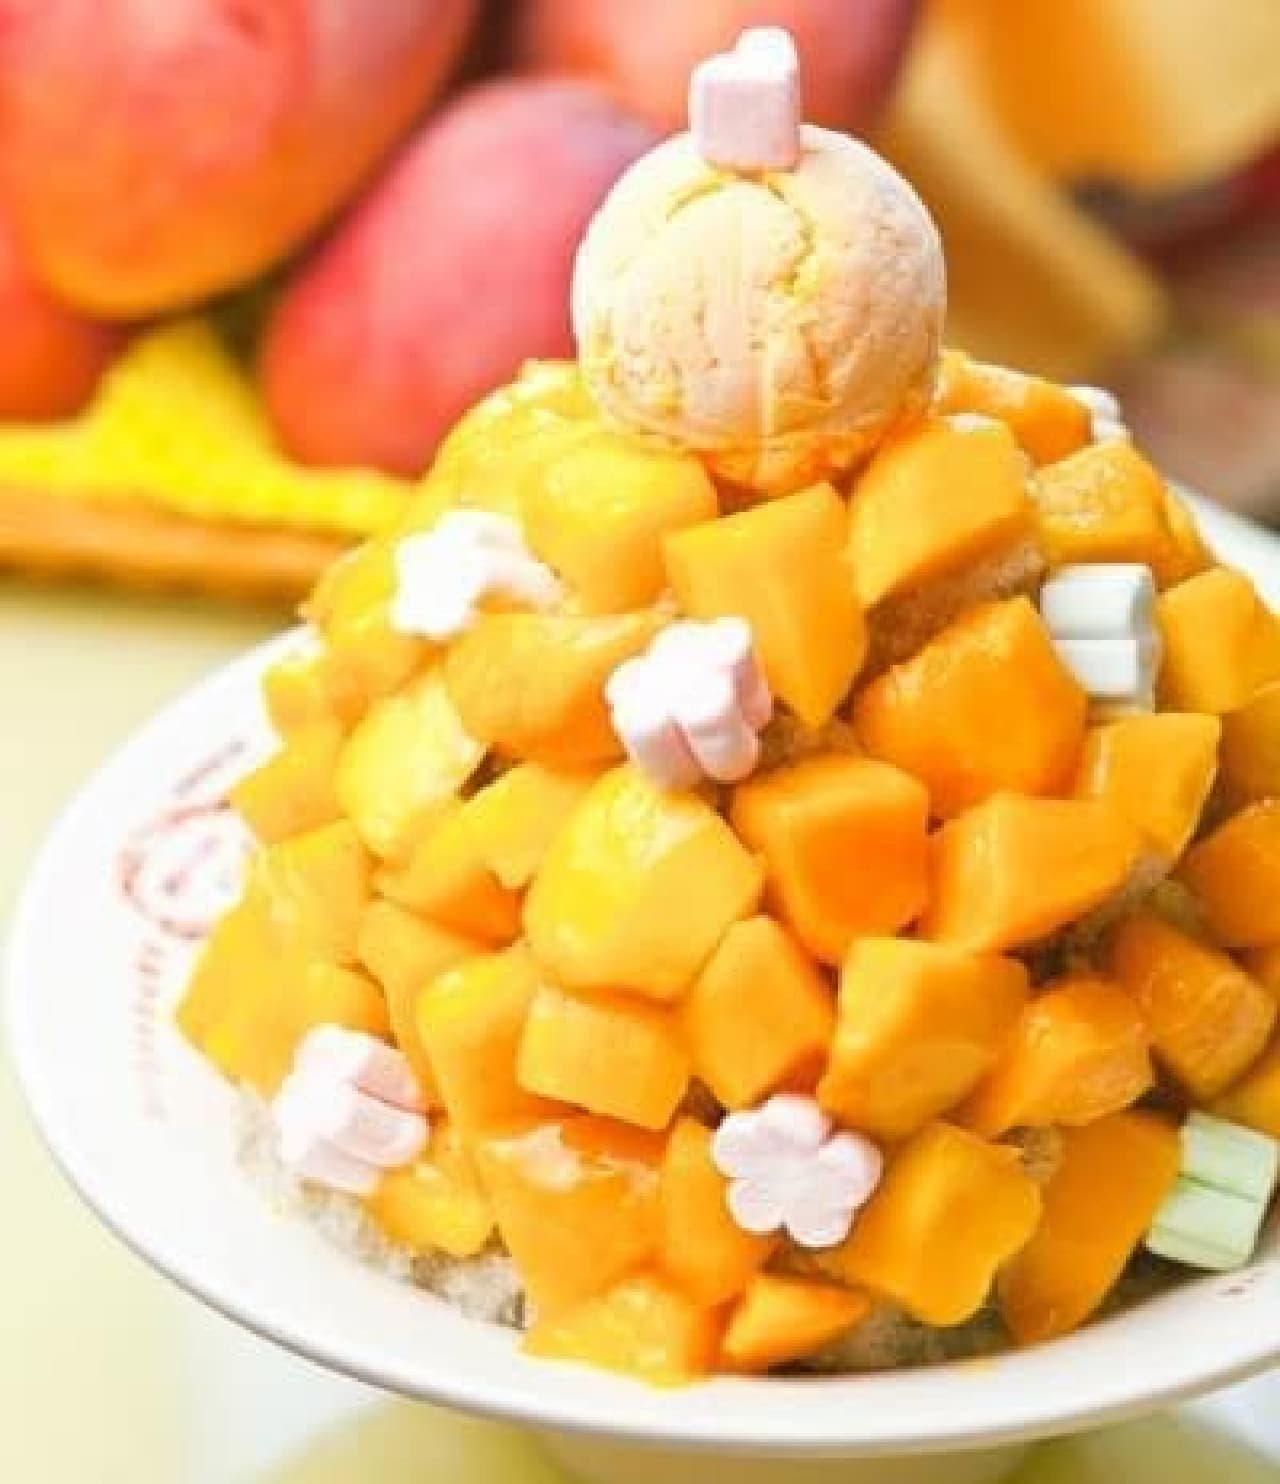 Enjoy the melting sweetness of mango!